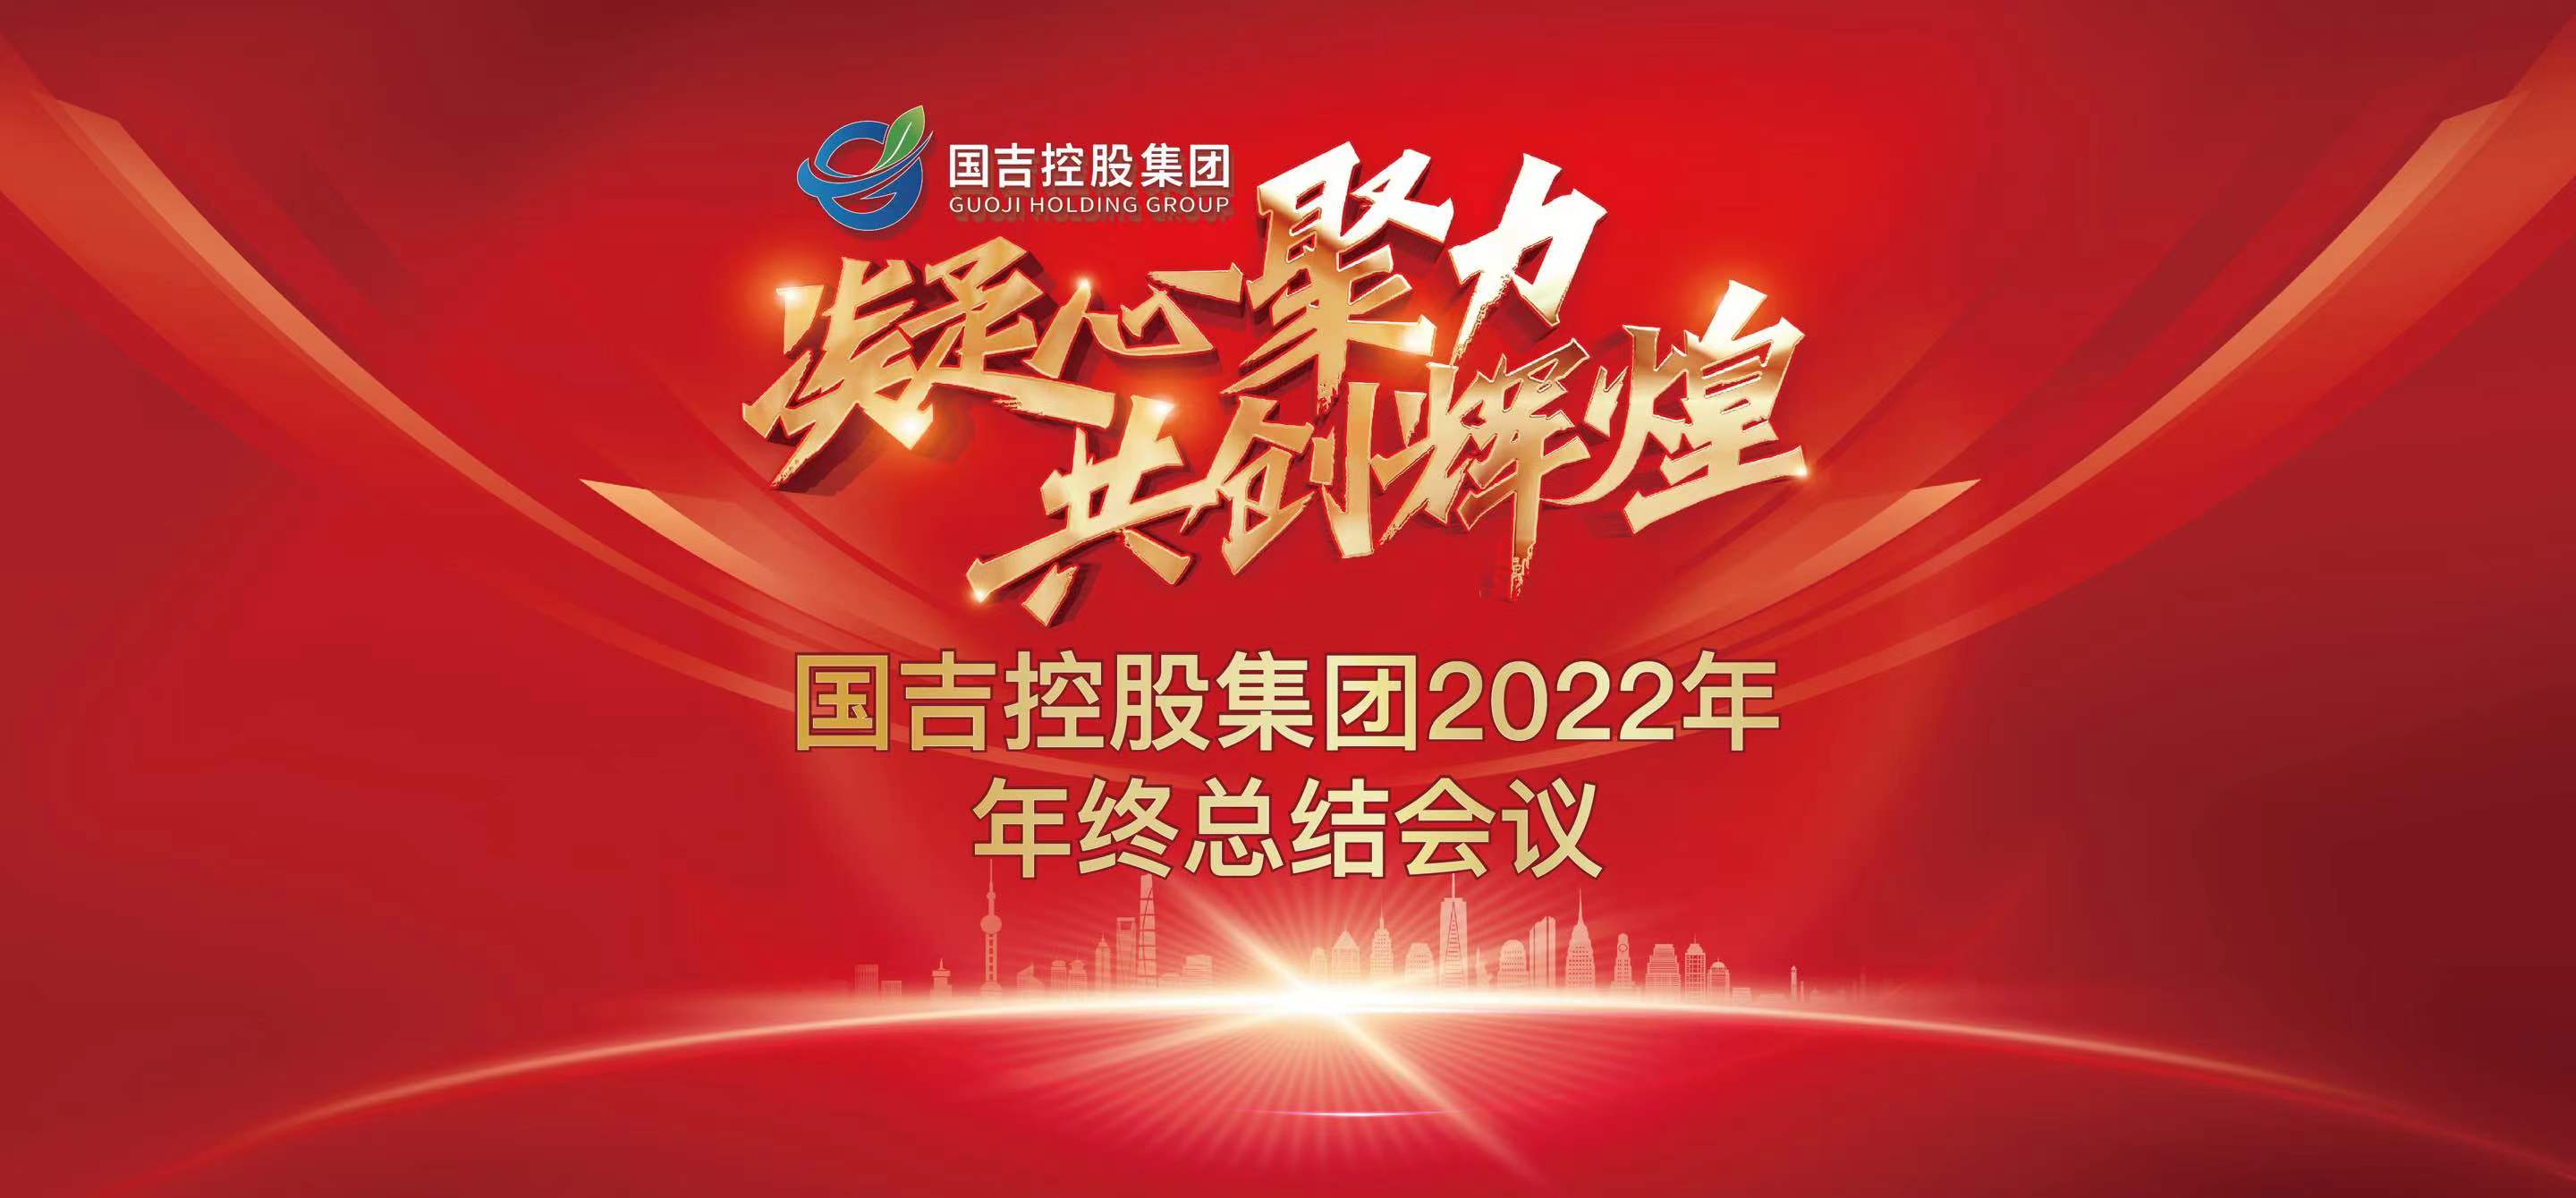 国吉控股集团2022年年终总结会议圆满举行